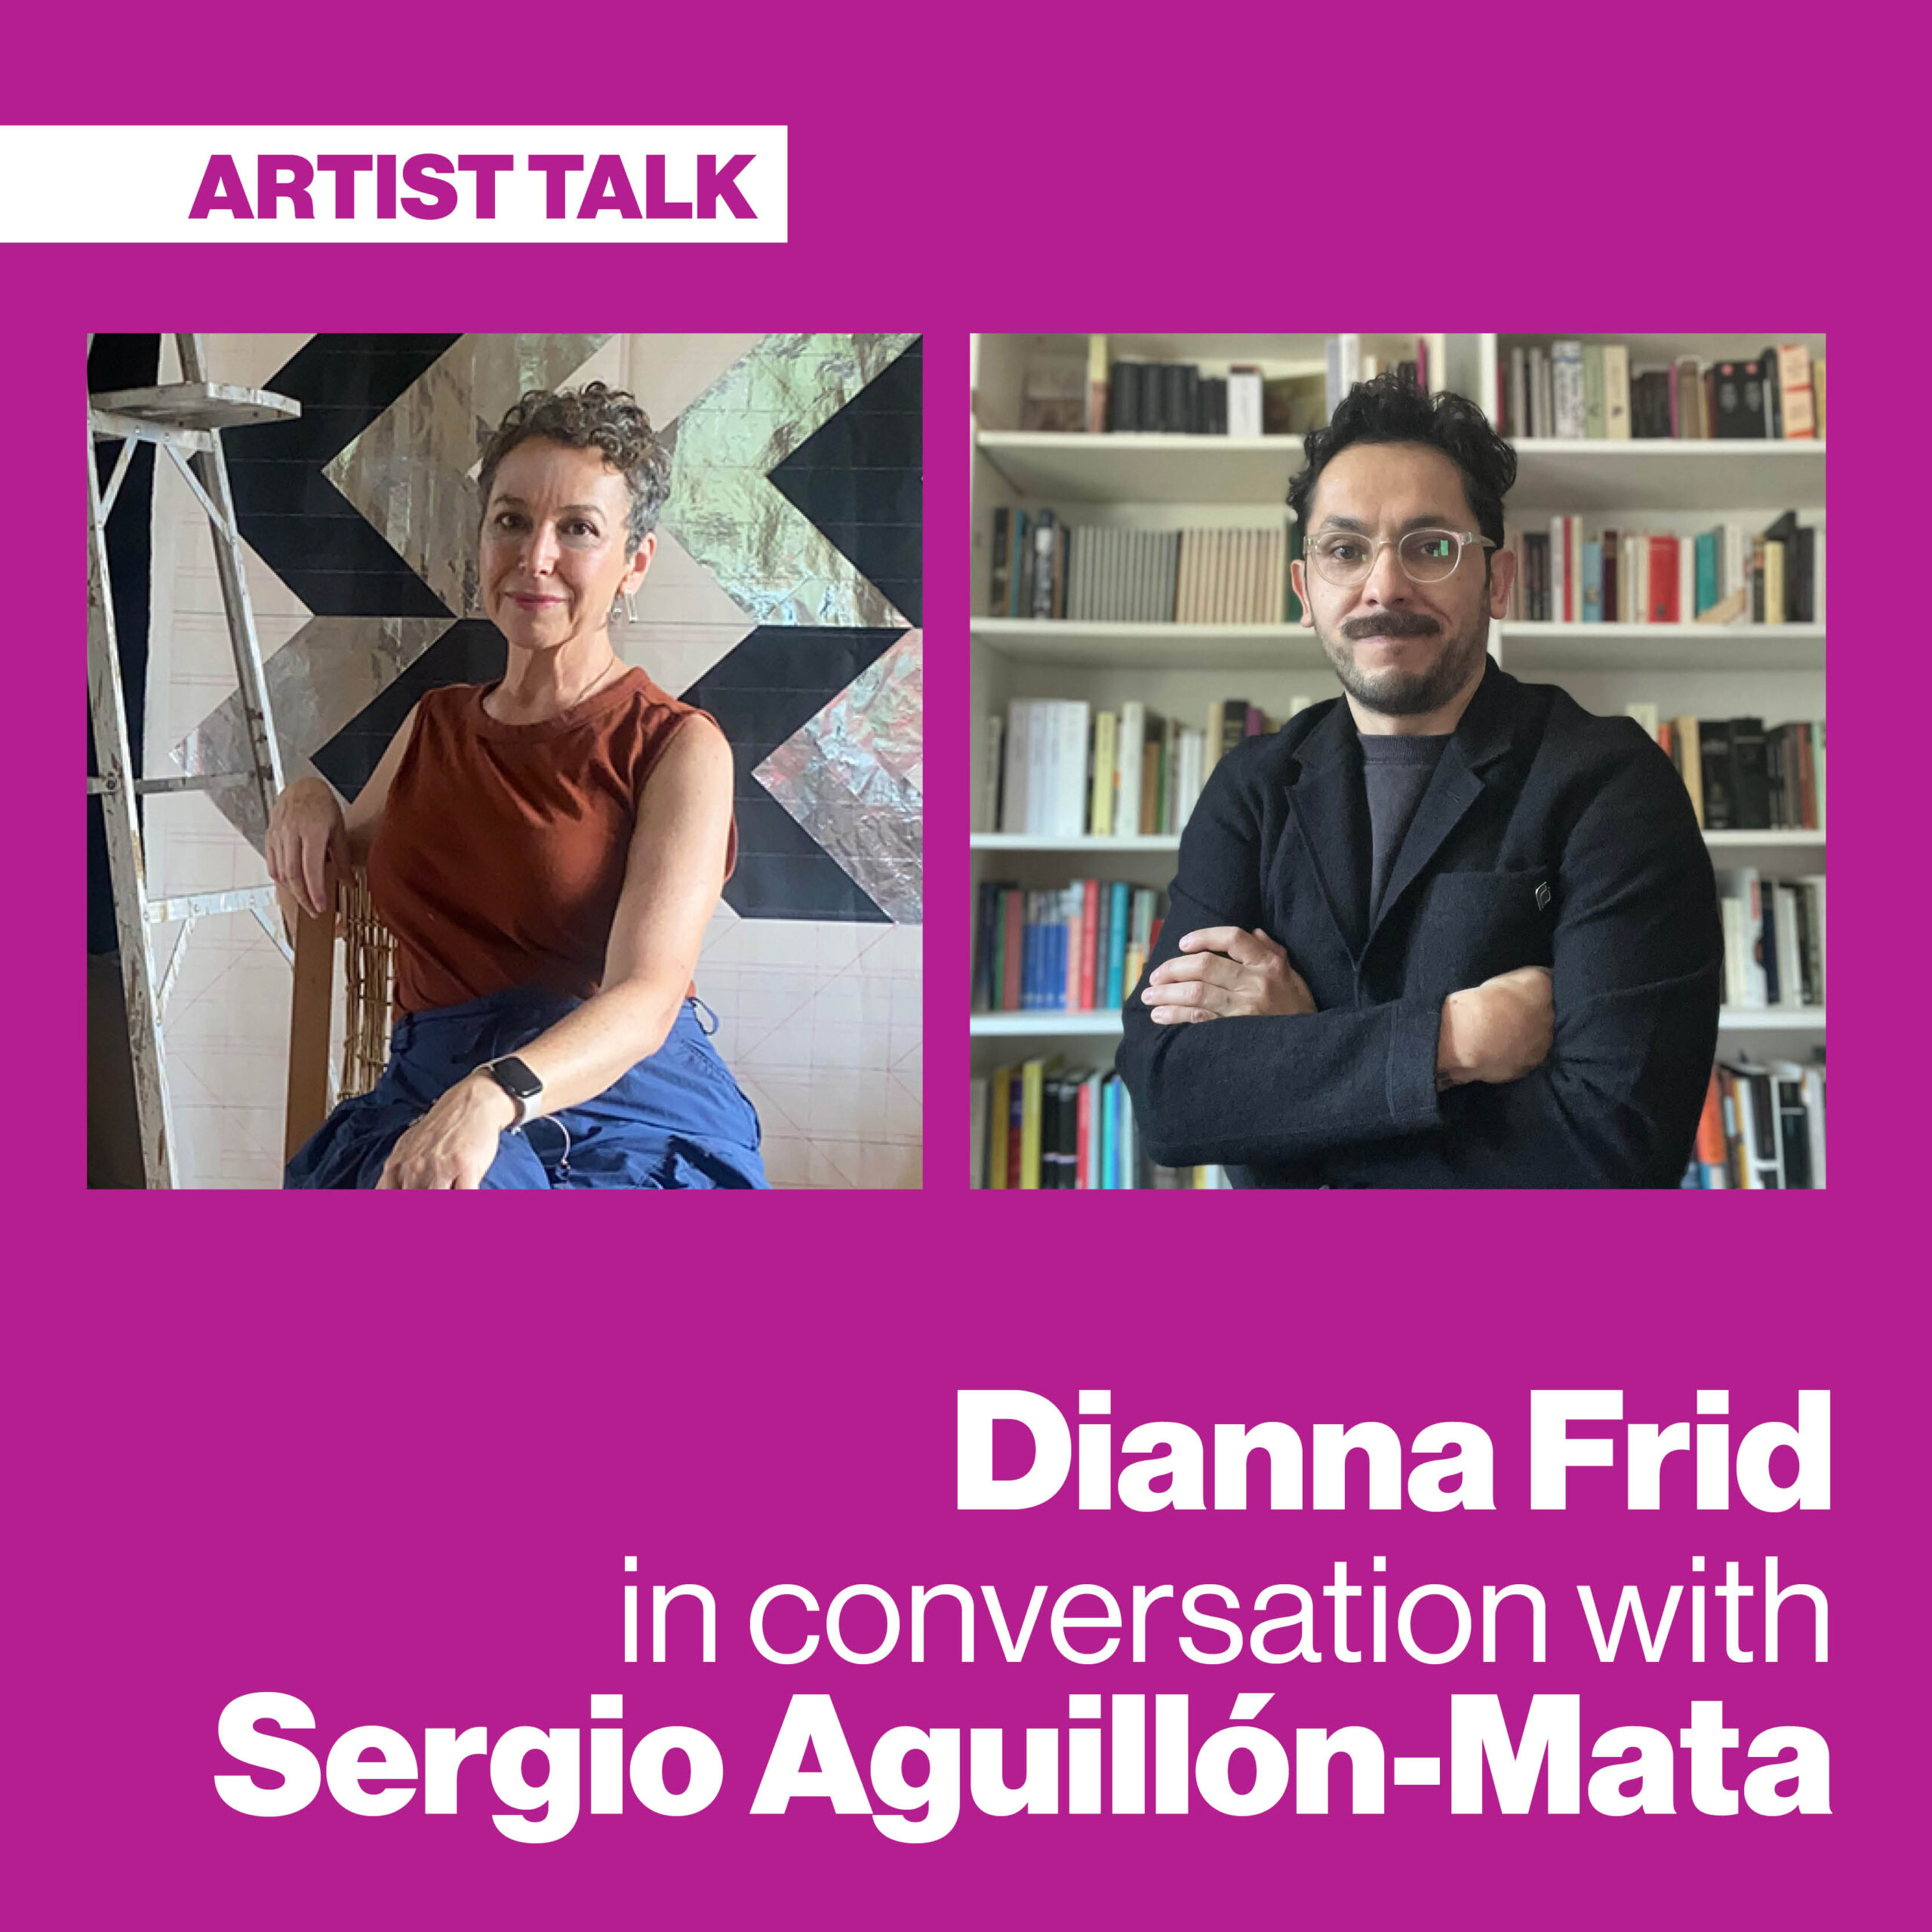 Dianna Frid in conversation with Sergio A. Aguillón-Mata